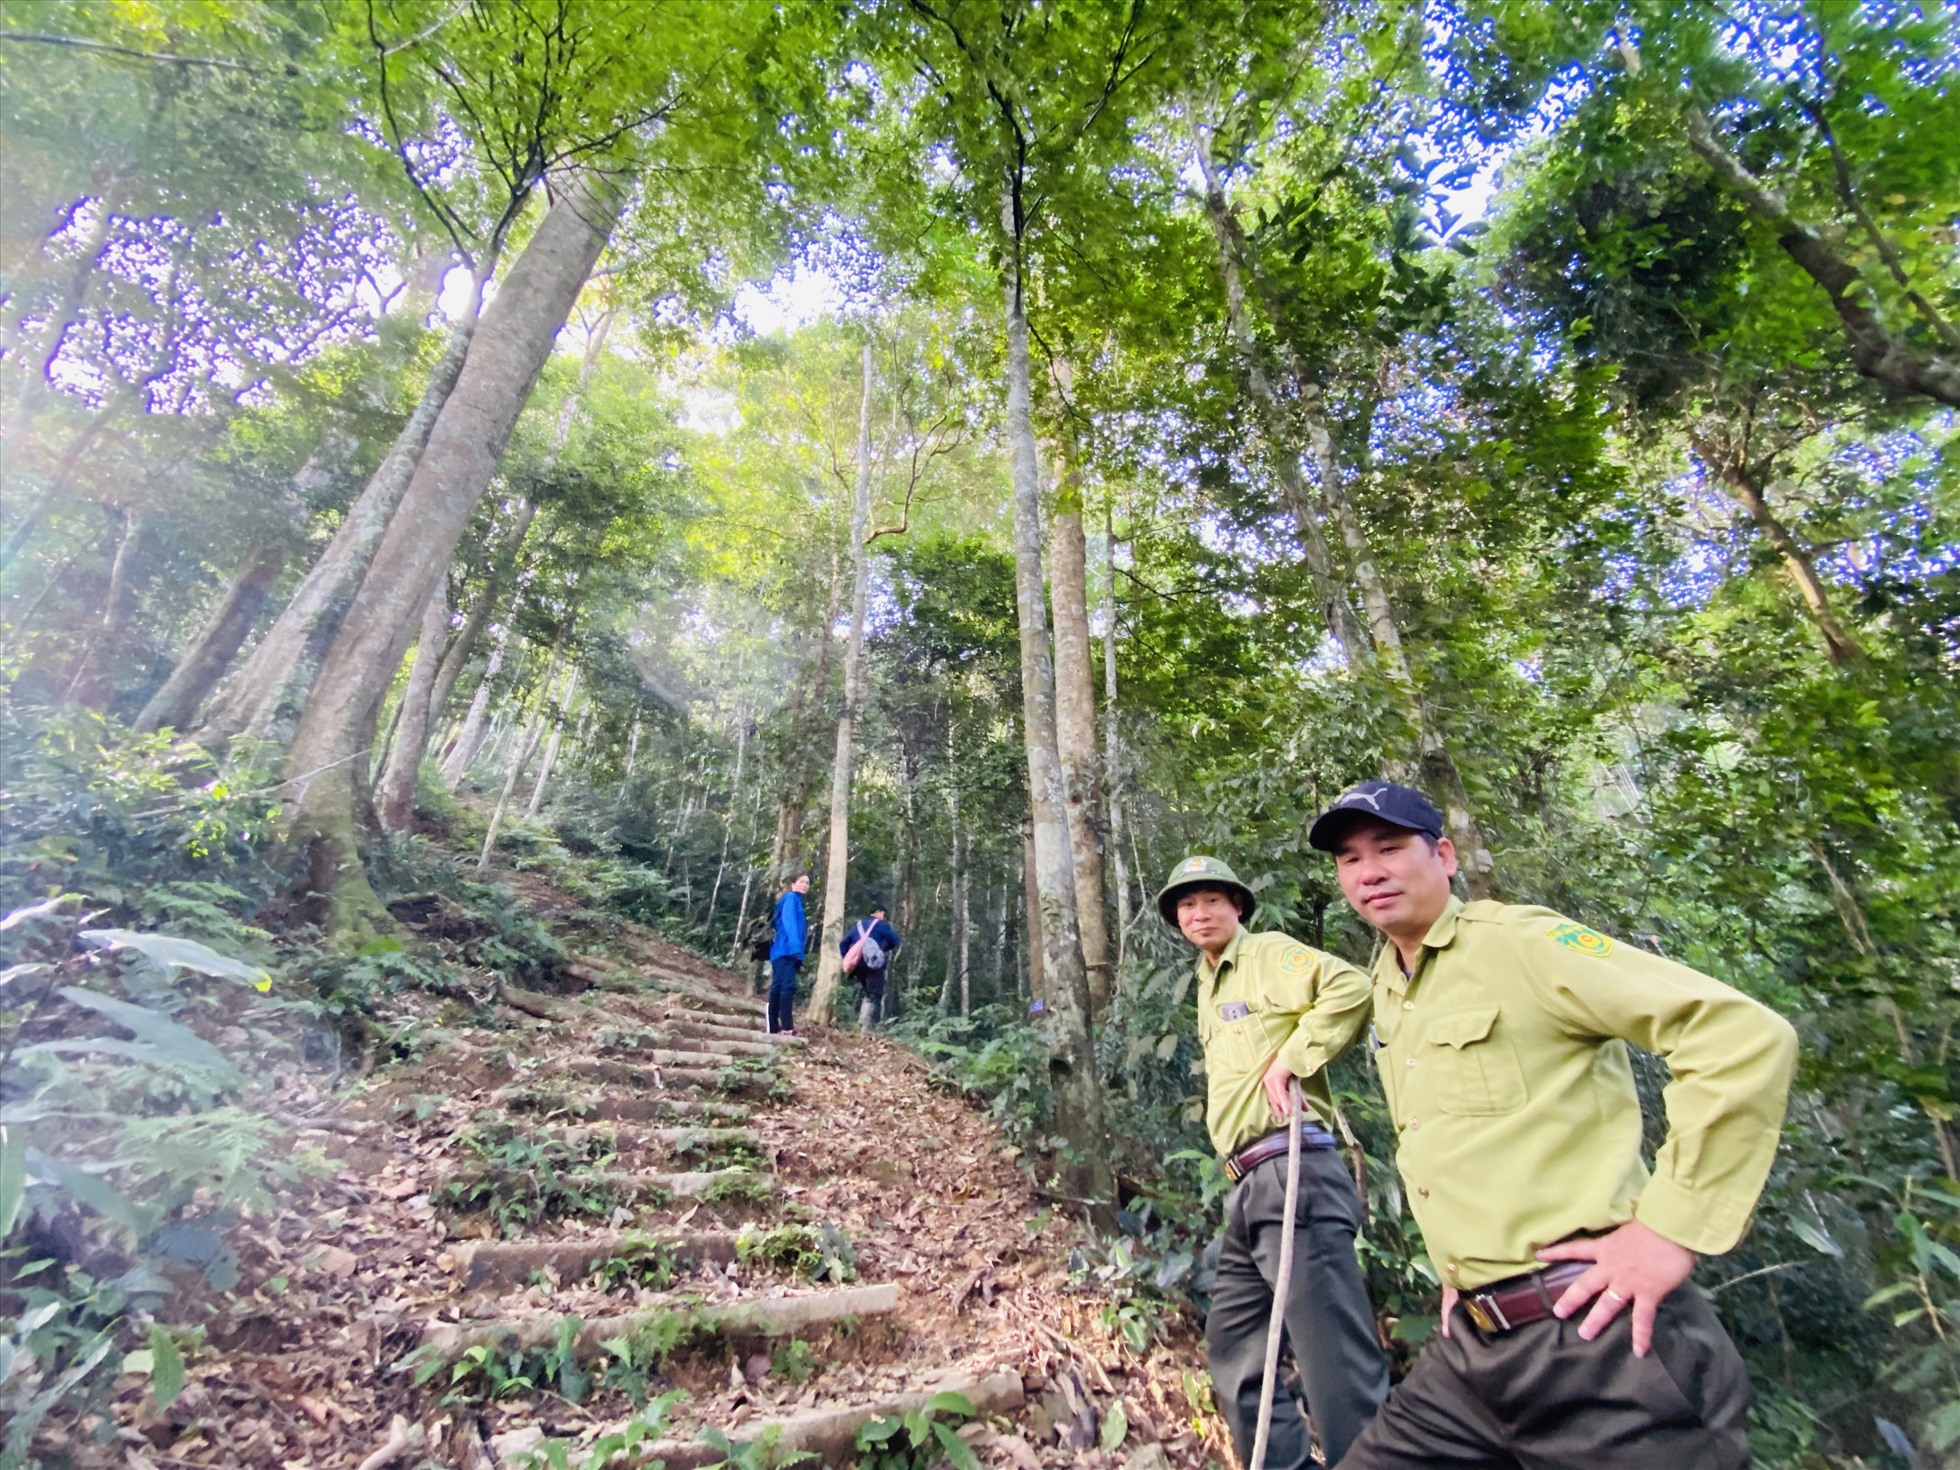 Anh Tuấn và anh Mạnh trong một chuyến tuần tra, bảo vệ rừng. Ảnh: Thành Sơn